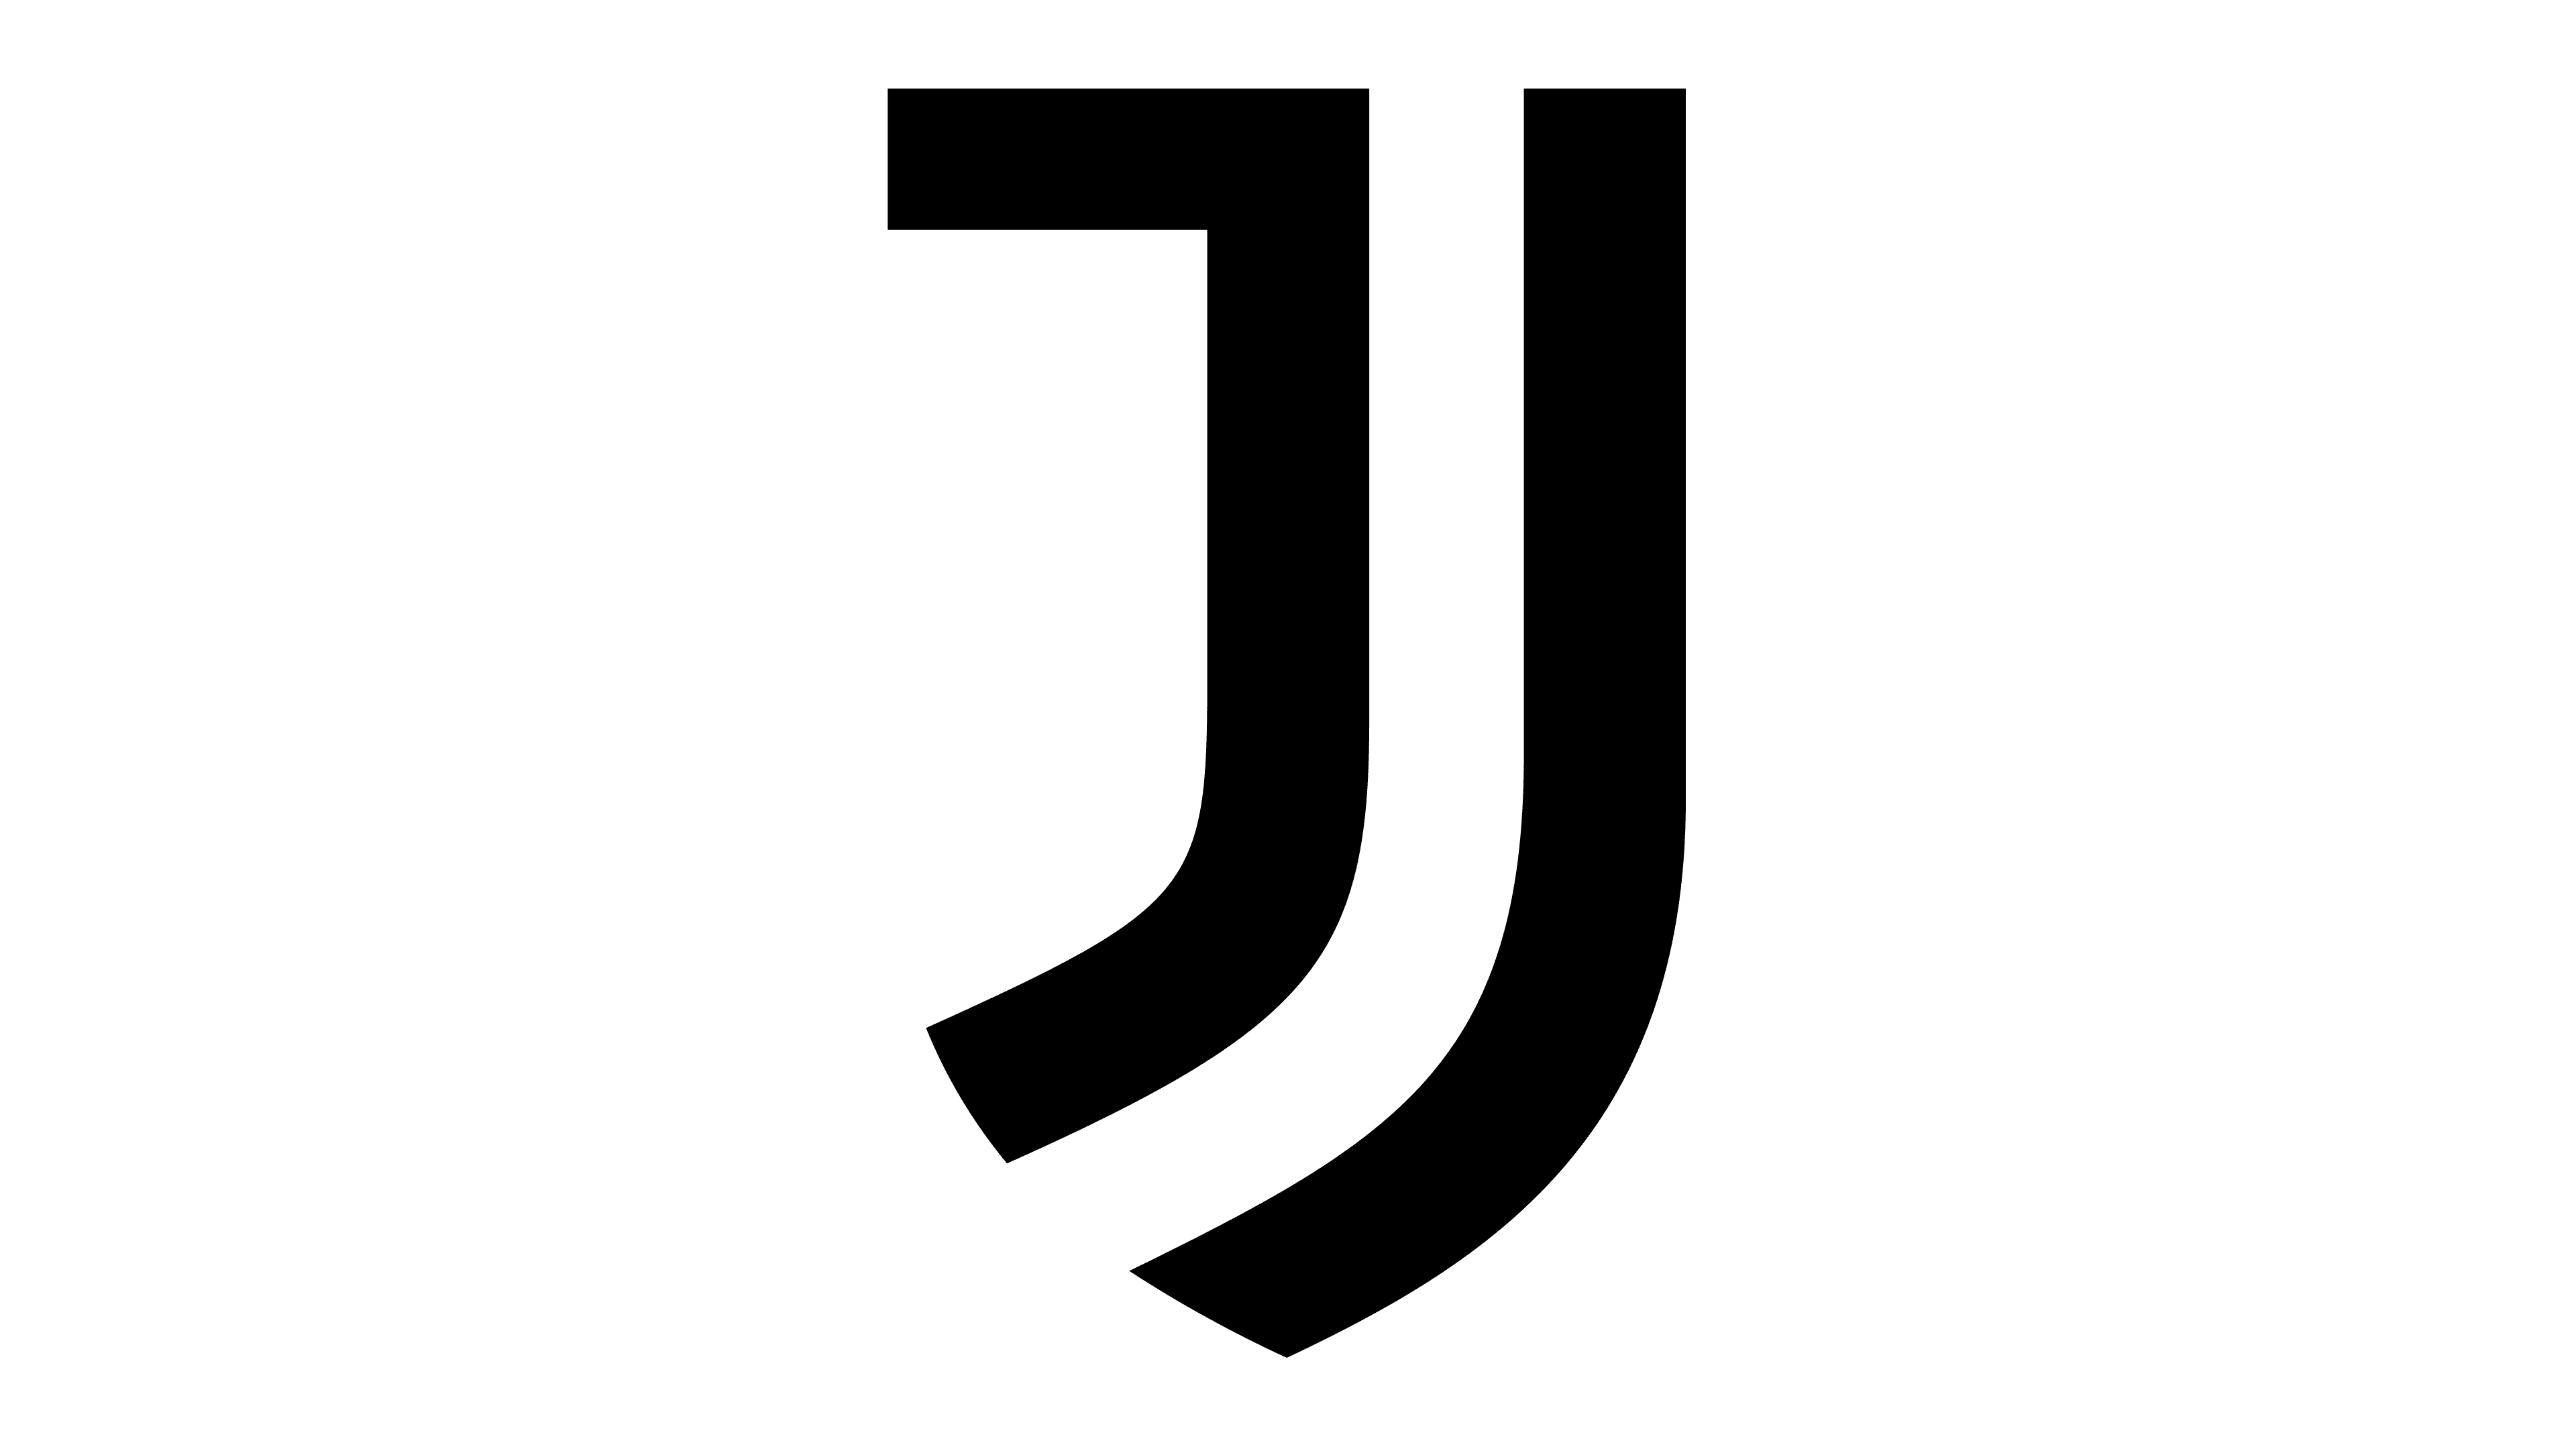 File:Juventus 2017 logo (negative).png - Wikipedia